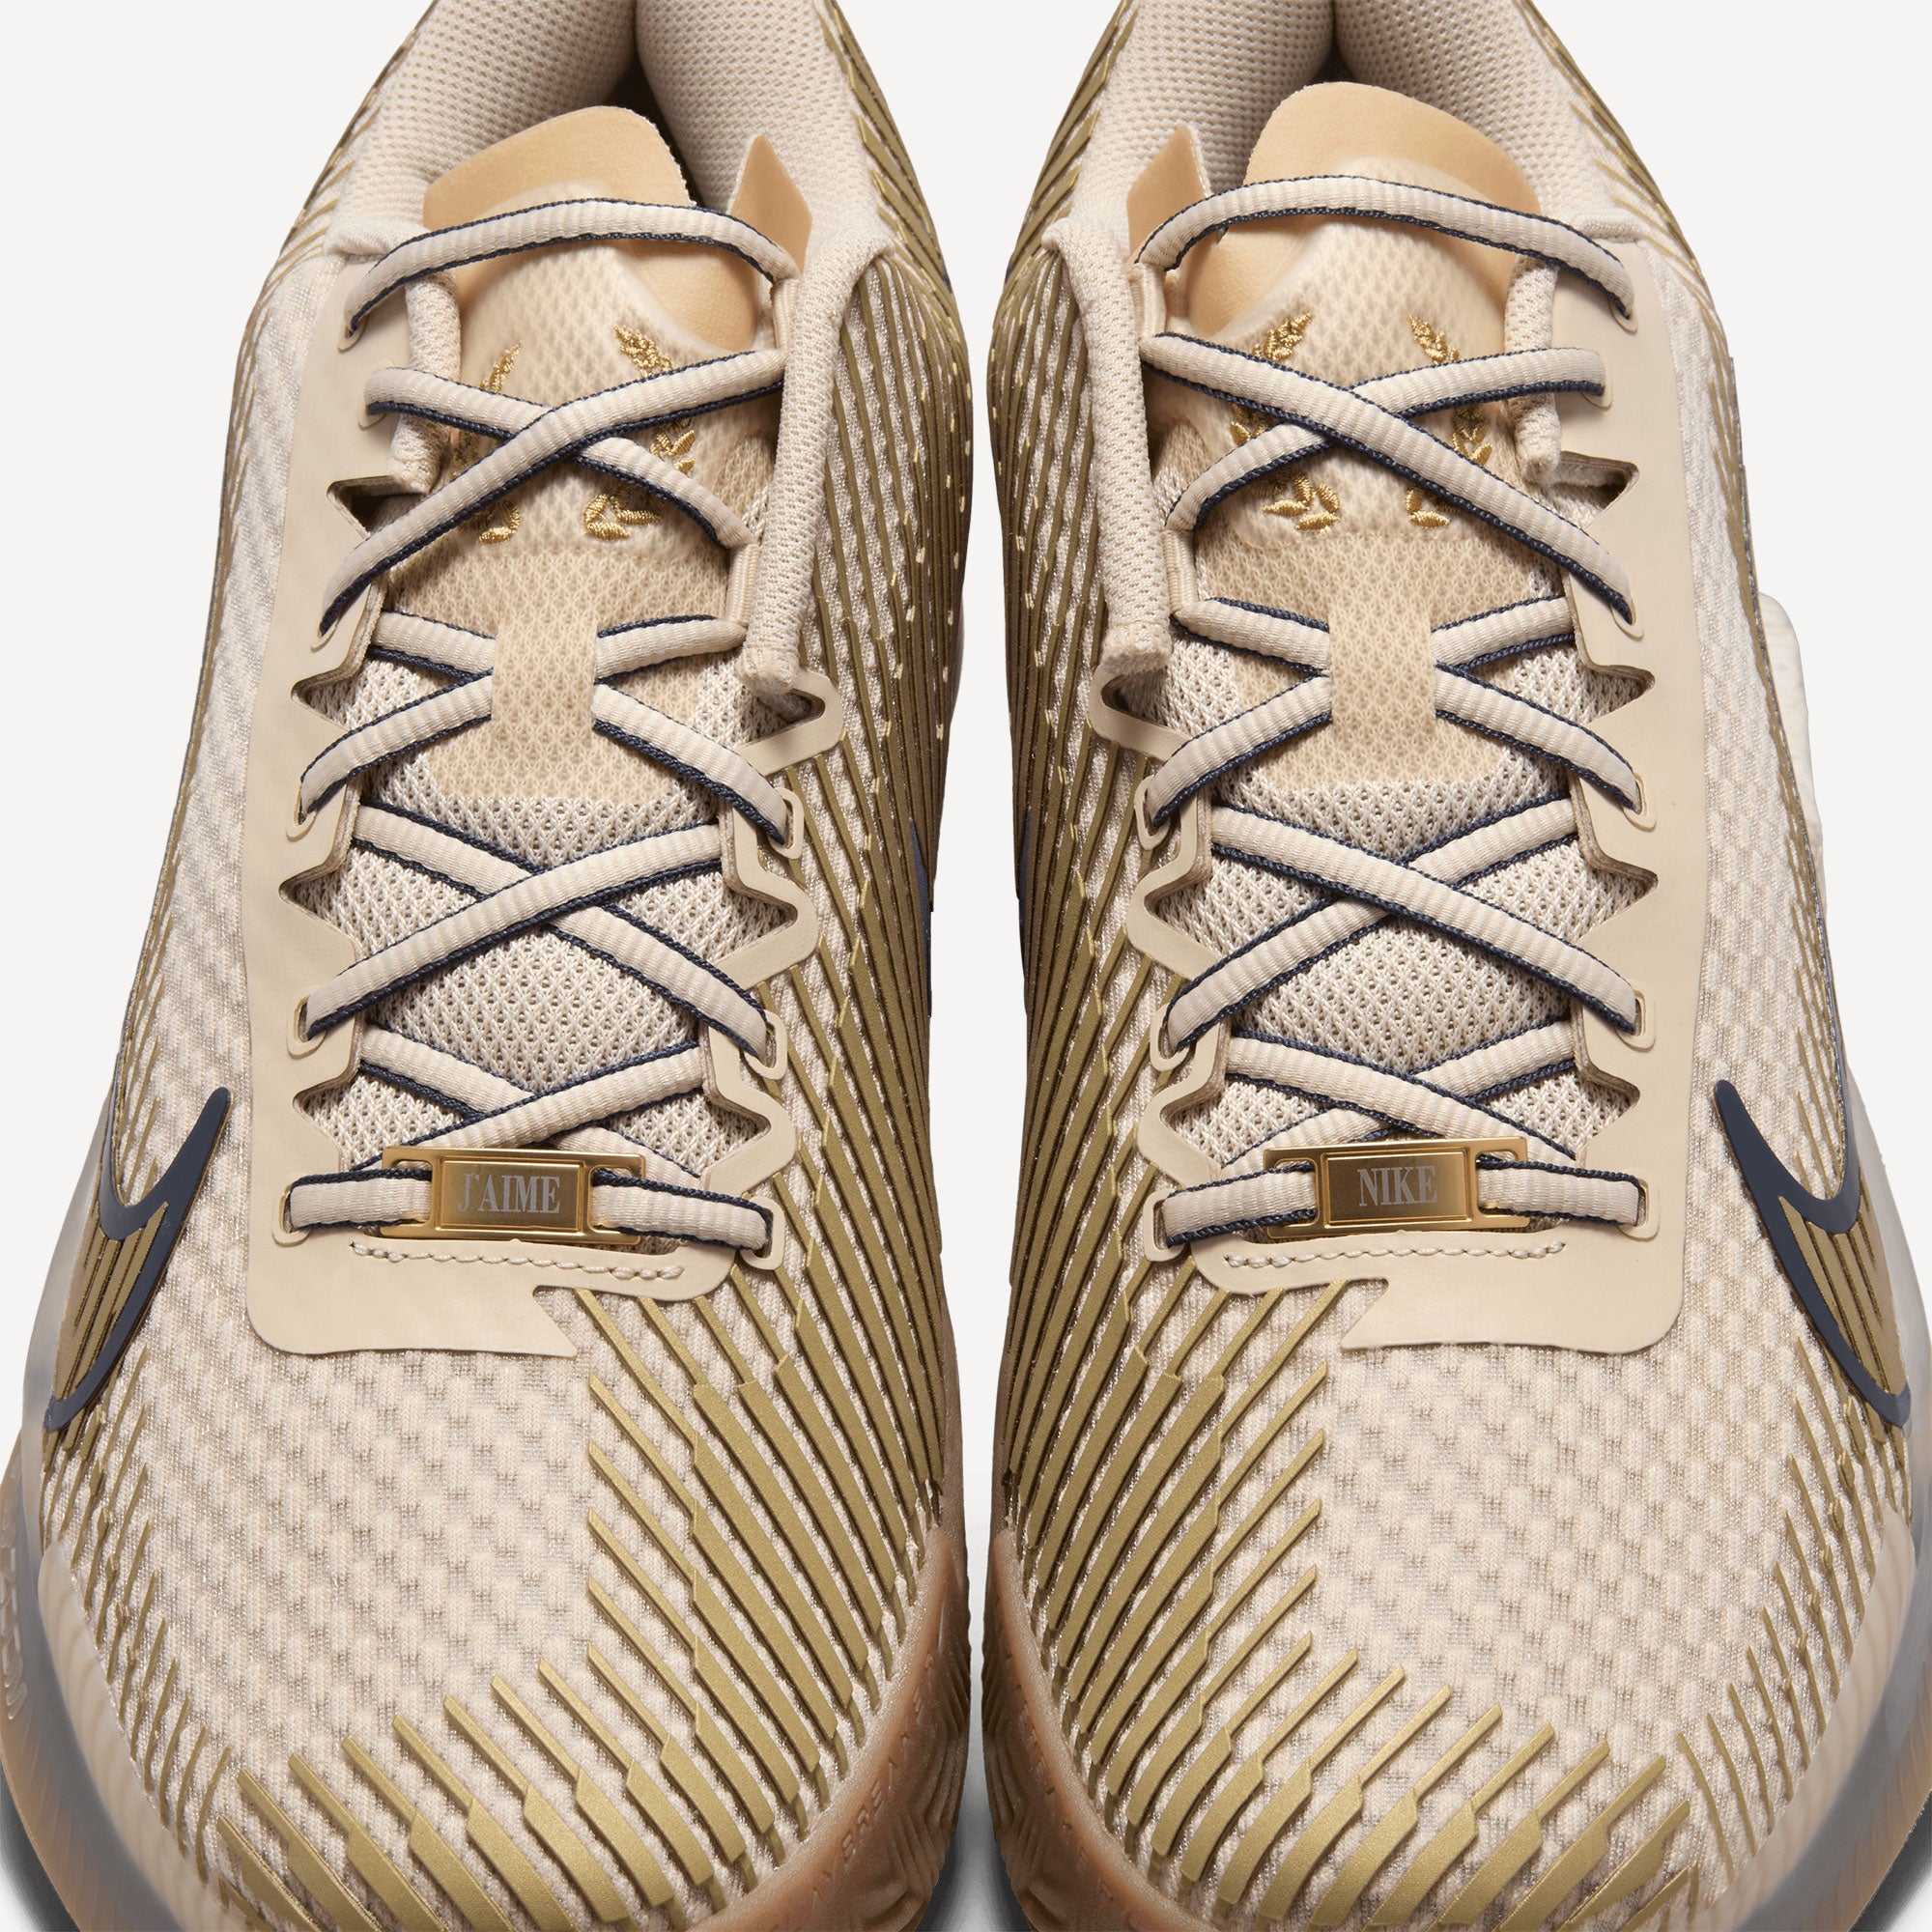 NikeCourt Air Zoom Vapor 11 Premium Men's Clay Court Tennis Shoes - Sand (9)